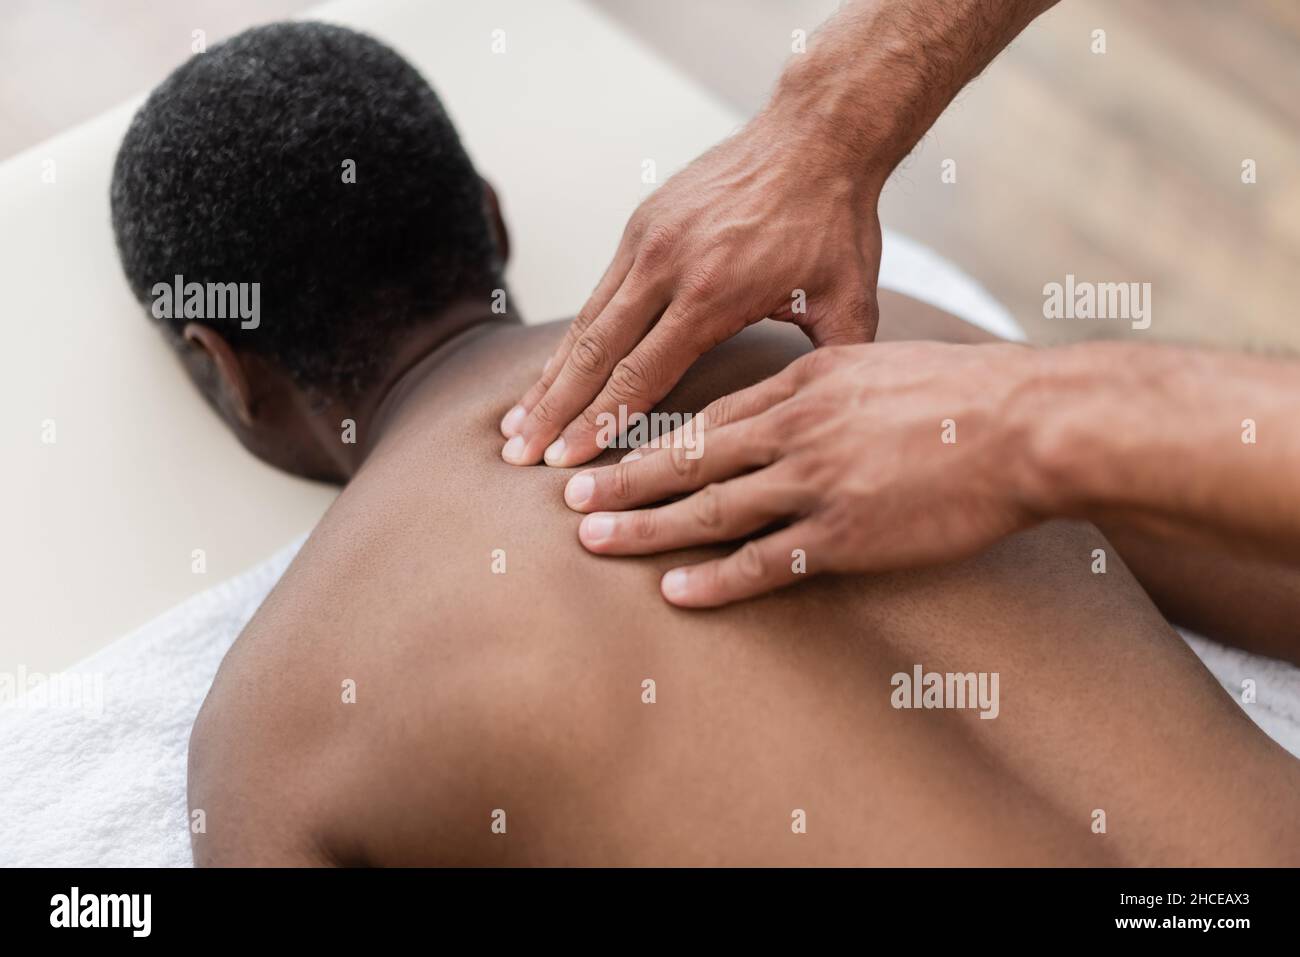 africain américain homme recevant un massage de dos pendant le traitement dans le centre de réadaptation Banque D'Images